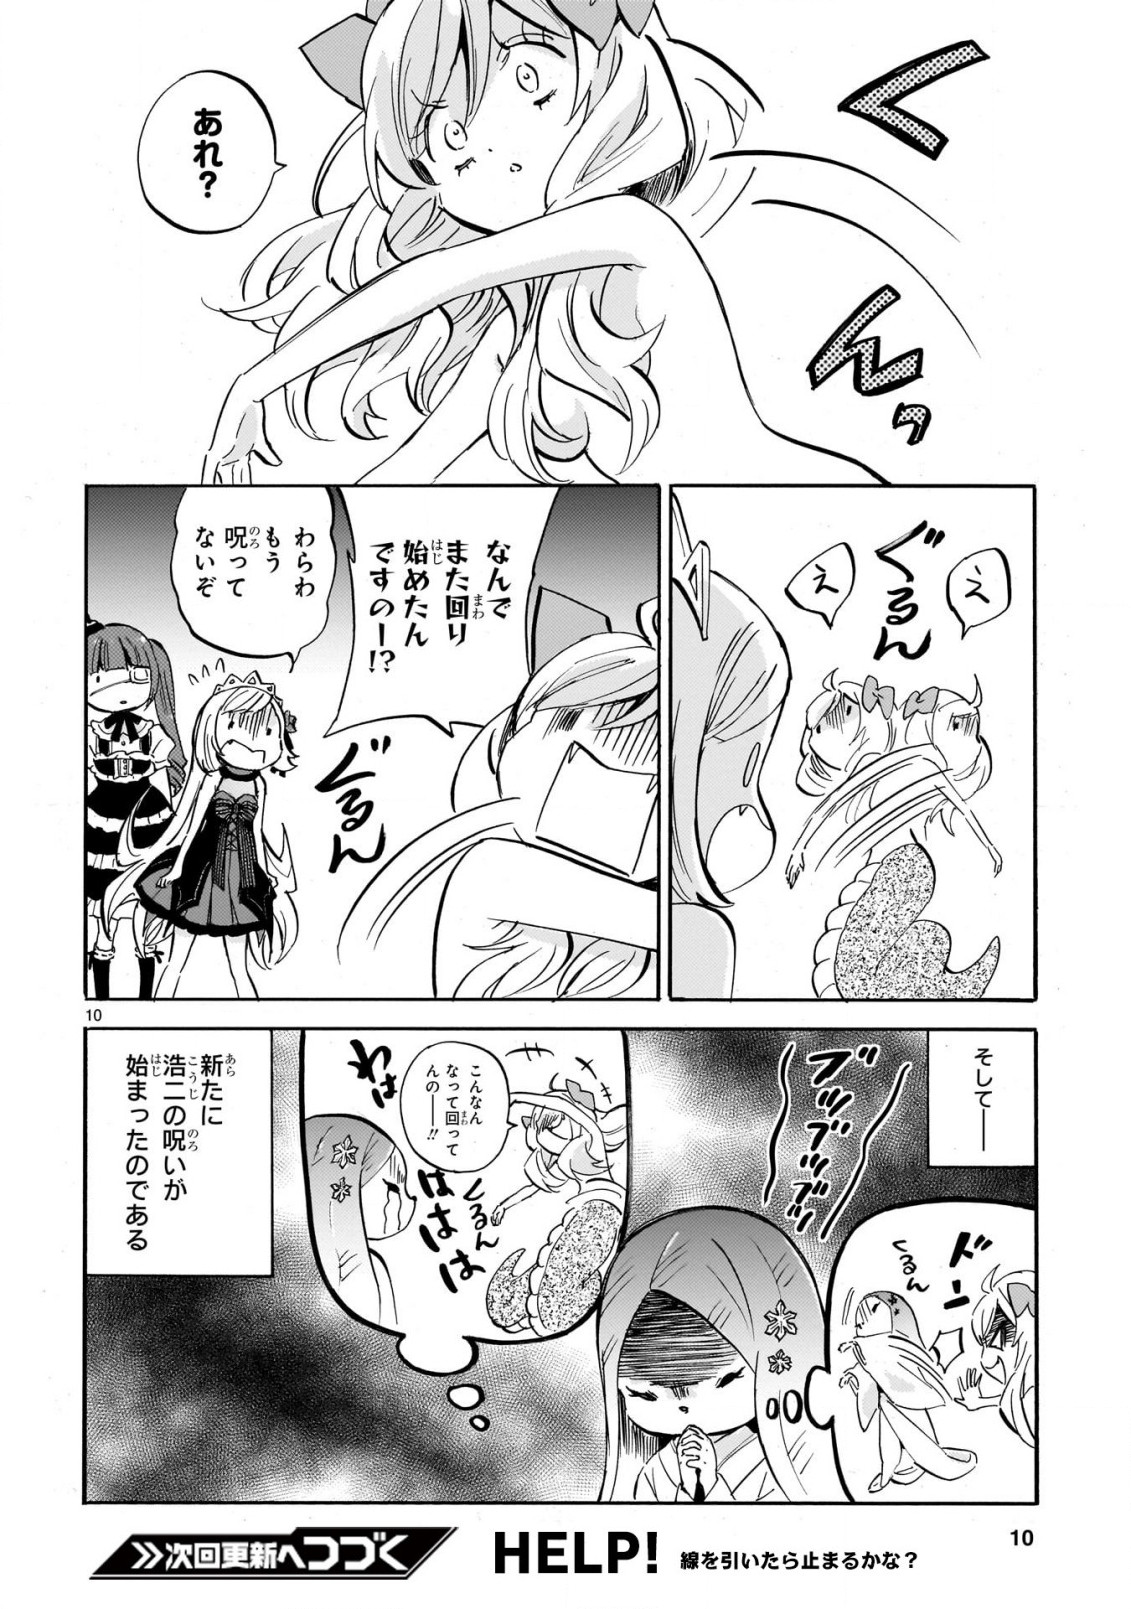 Jashin-chan Dropkick - Chapter 226 - Page 10